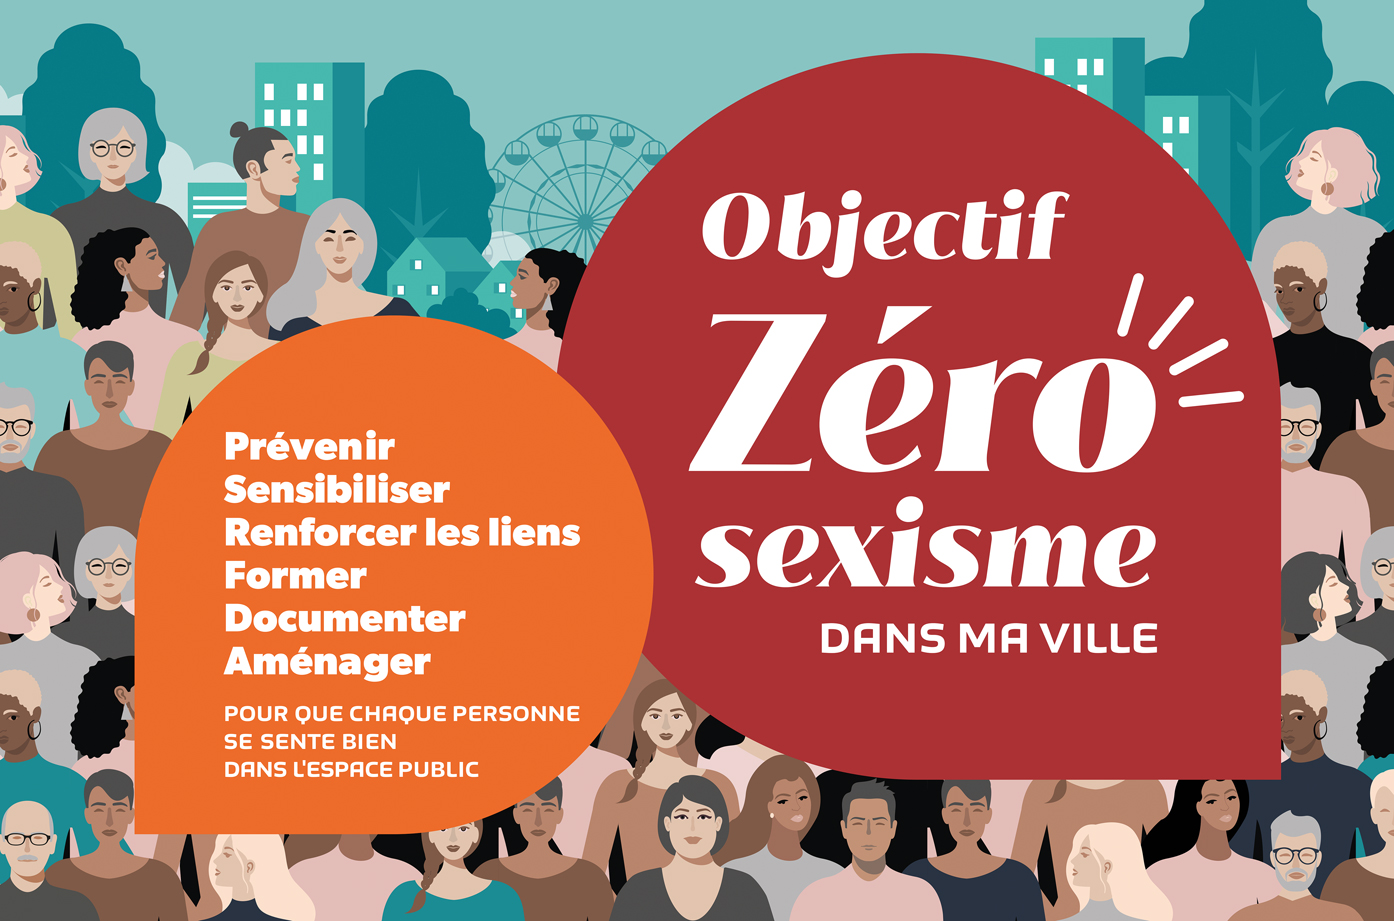 zero-sexisme-dans-ma-ville-graphisme-sophie-jaton-atelier-de-graphisme-geneve